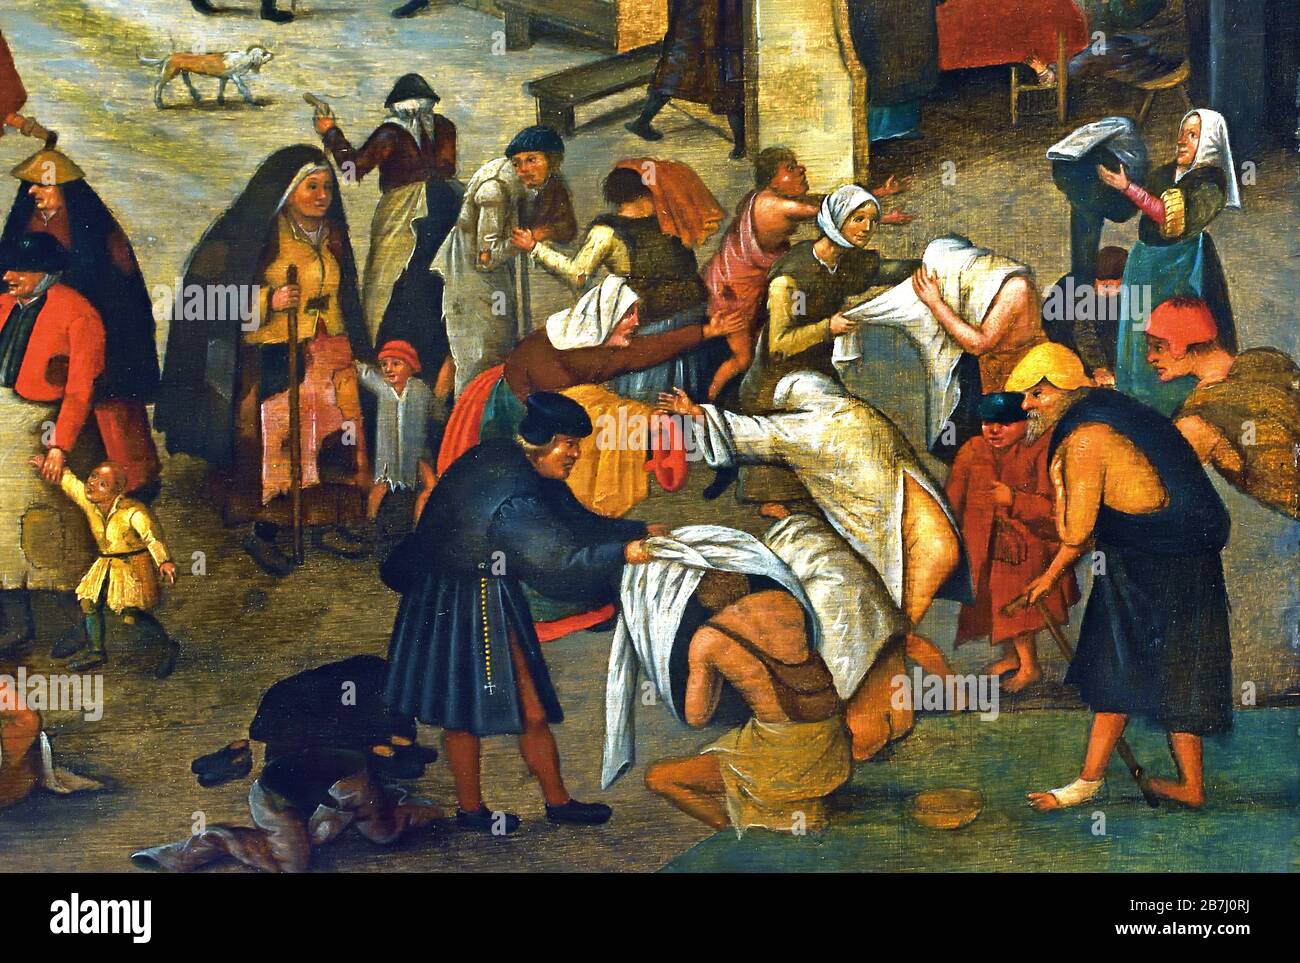 Sieben Werke der Barmherzigkeit 1616 Pieter Brueghel der Jüngere 1564-1637, die Familie Brueghel ( Bruegel oder Breughel ), flämische Maler 16.-17. Jahrhundert, Belgier, Belgien. Stockfoto